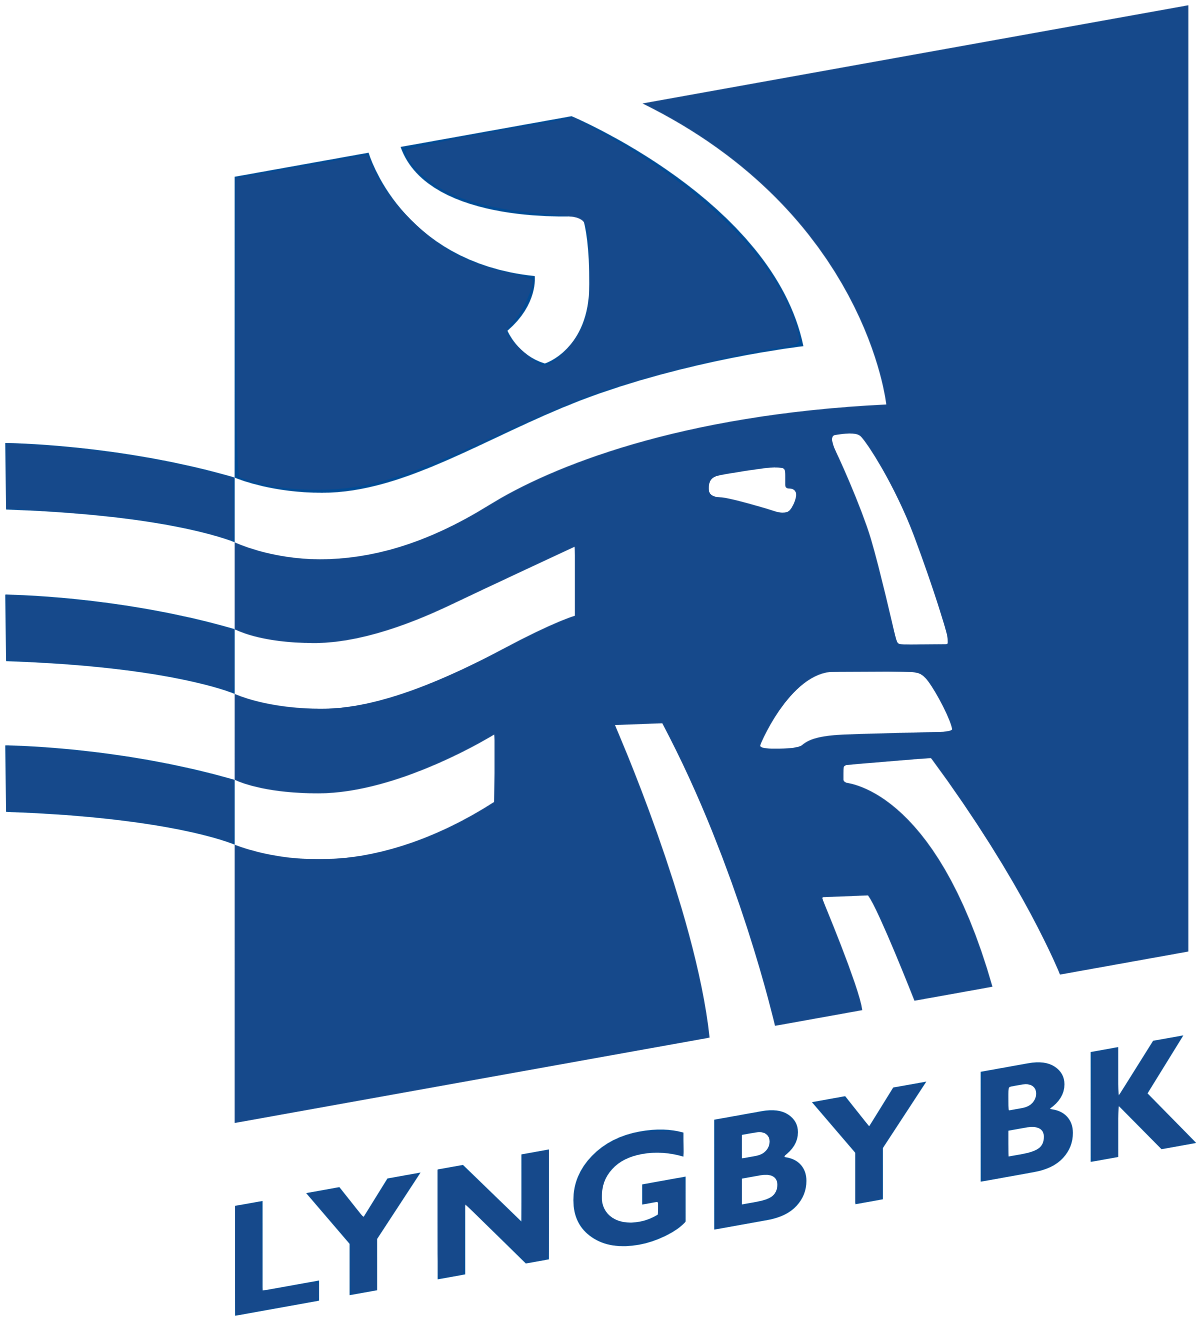 Lyngby BK emblem